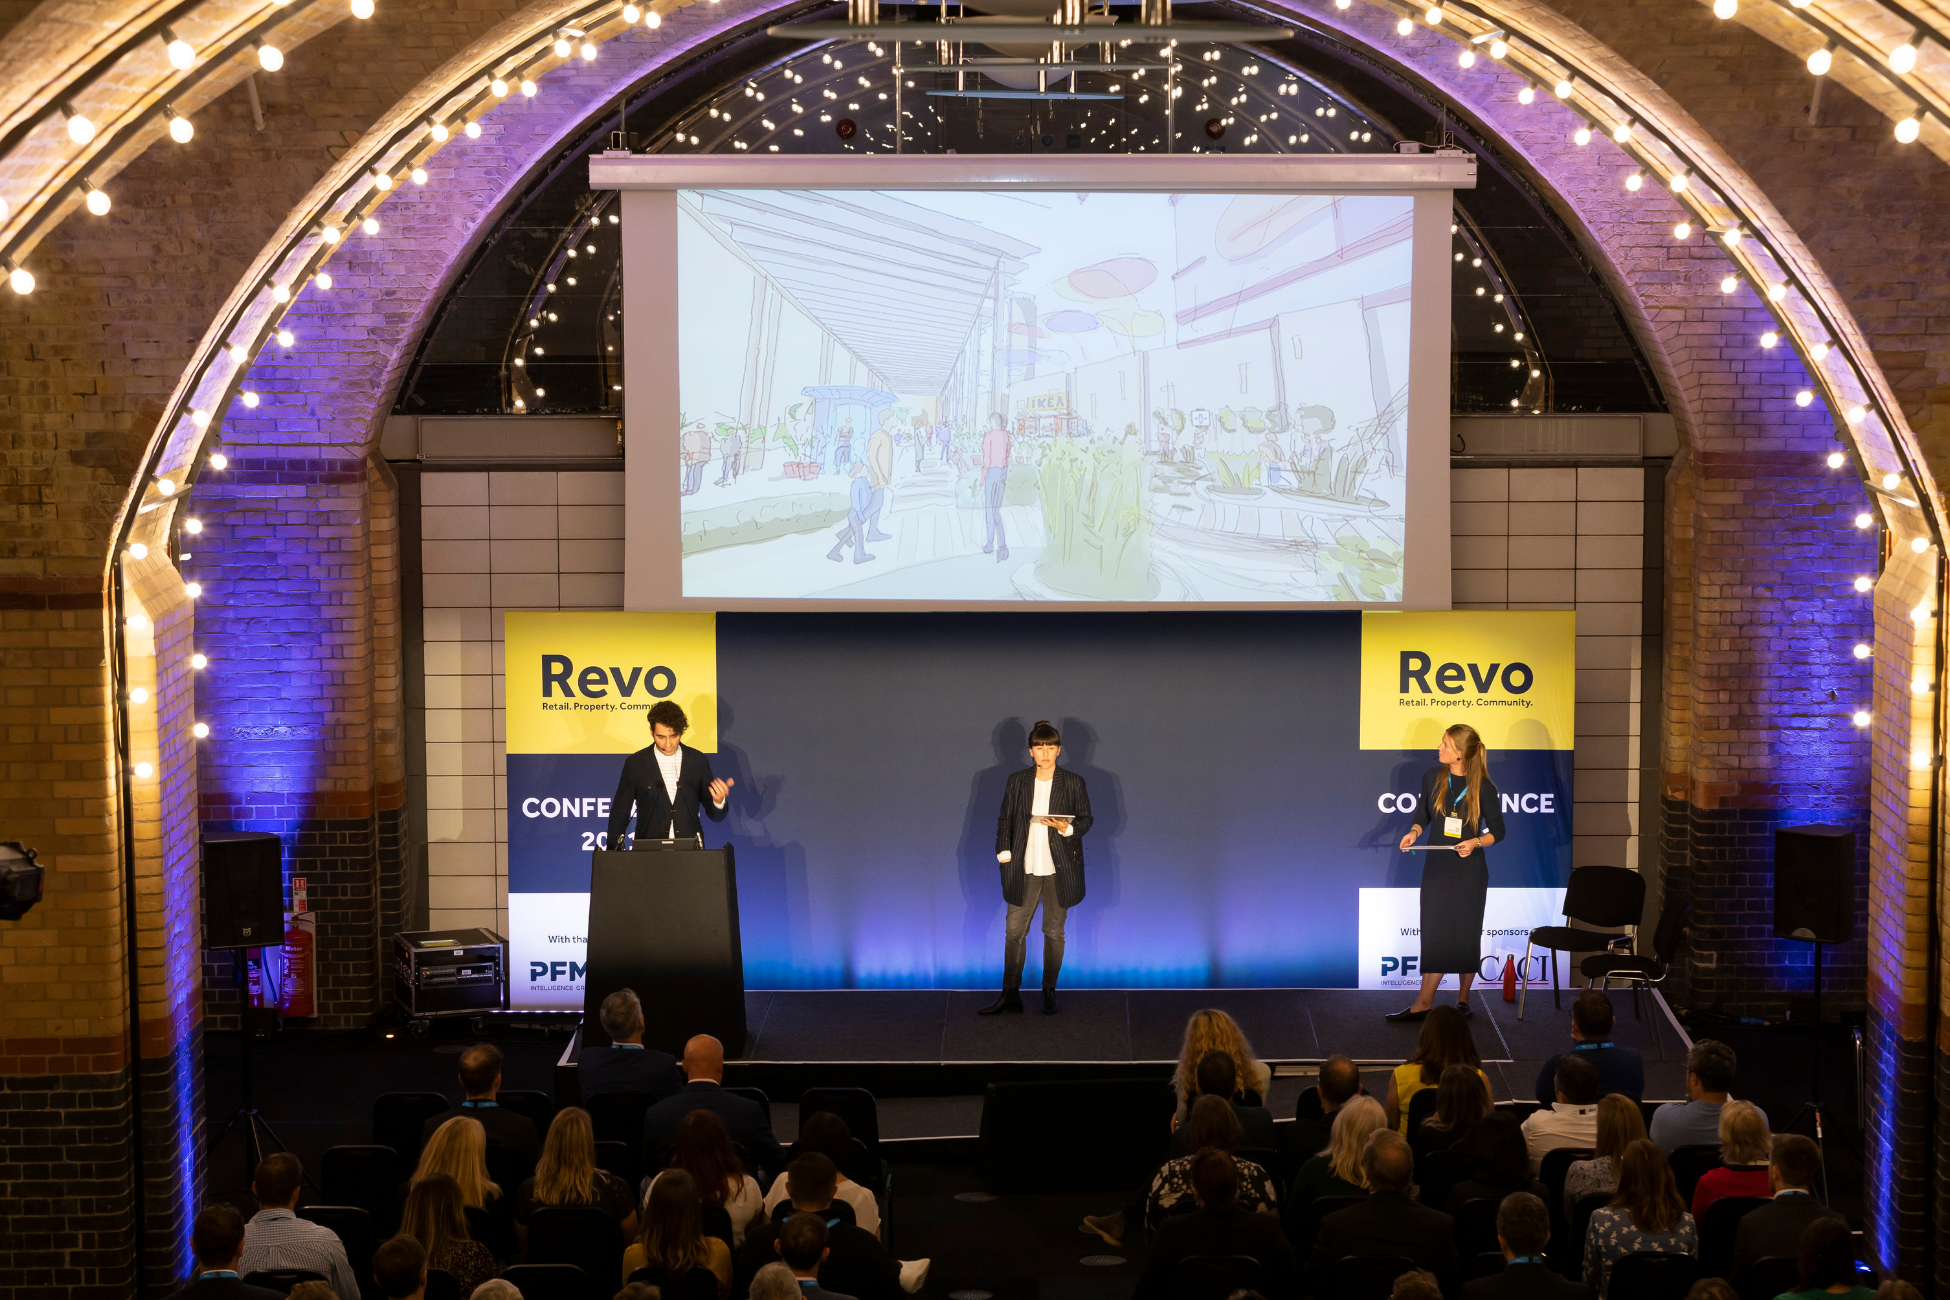 Revo Conference